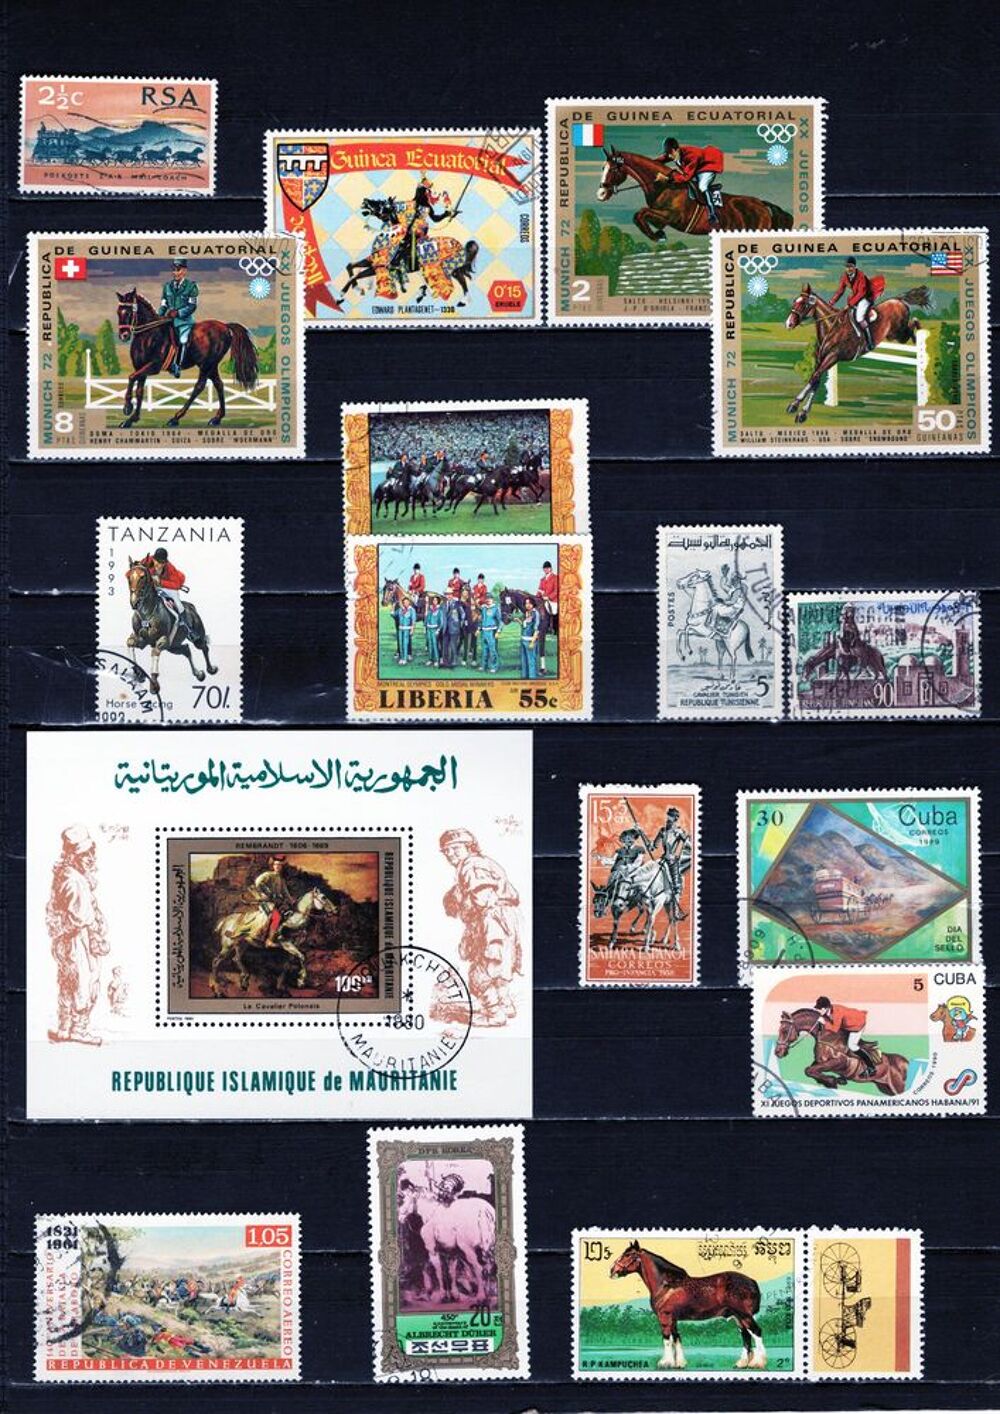 lot de 62 timbres du MONDE avec des CHEVAUX 